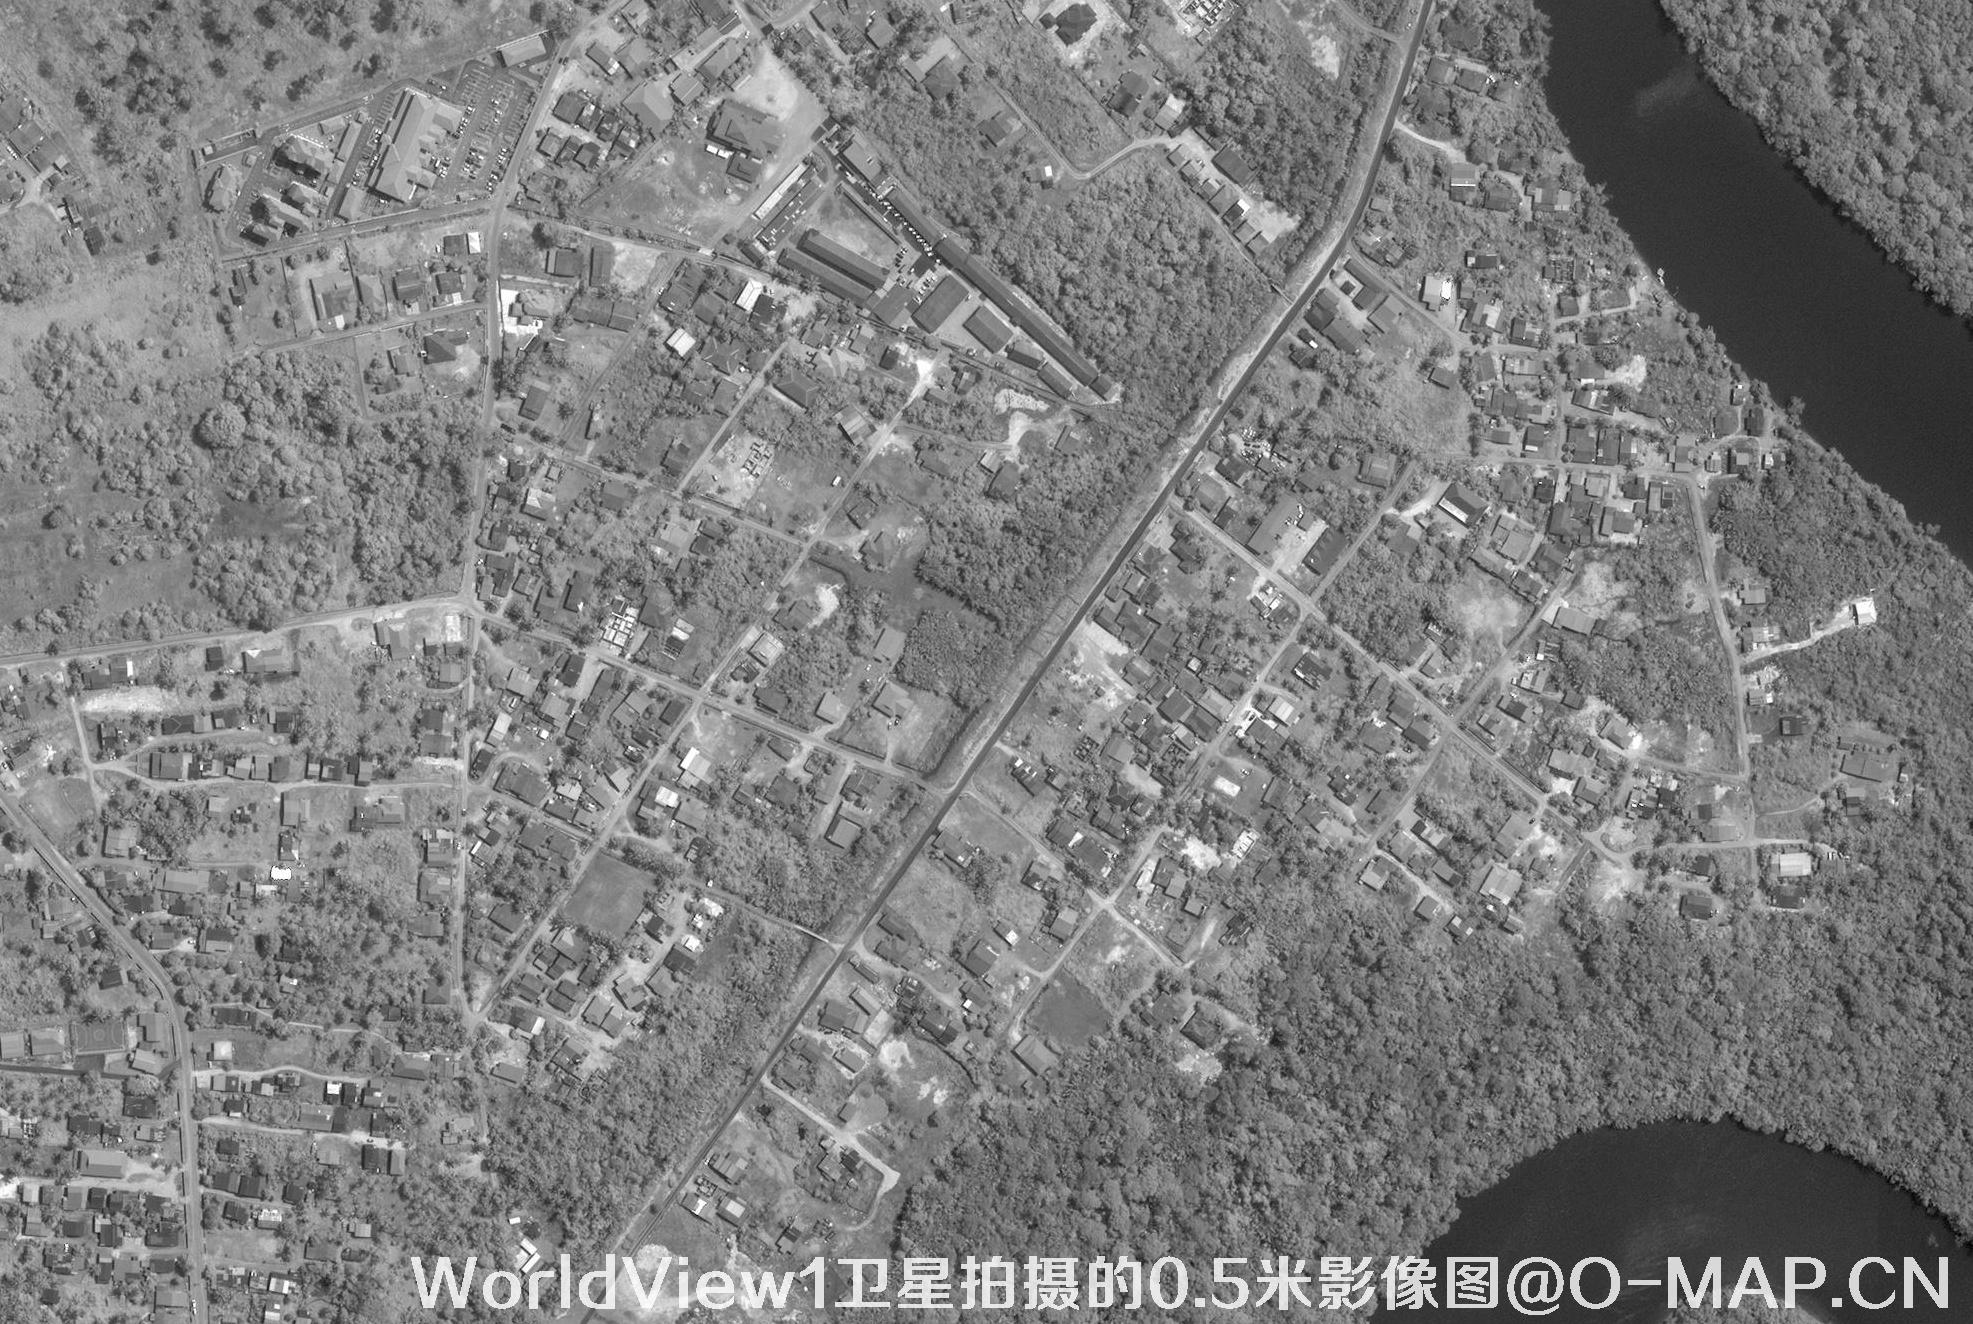 美国0.5米WV1卫星拍摄的卫星影像图片